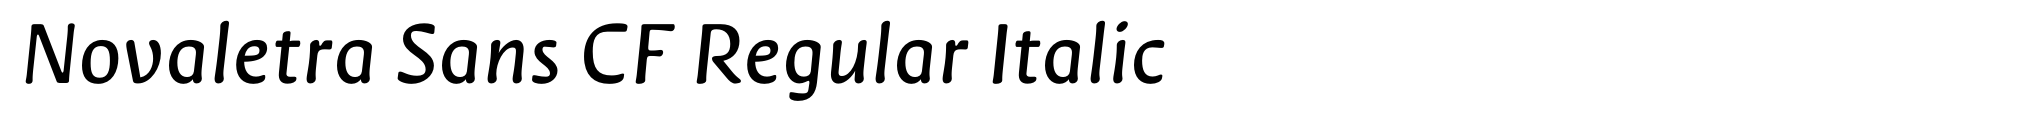 Novaletra Sans CF Regular Italic image